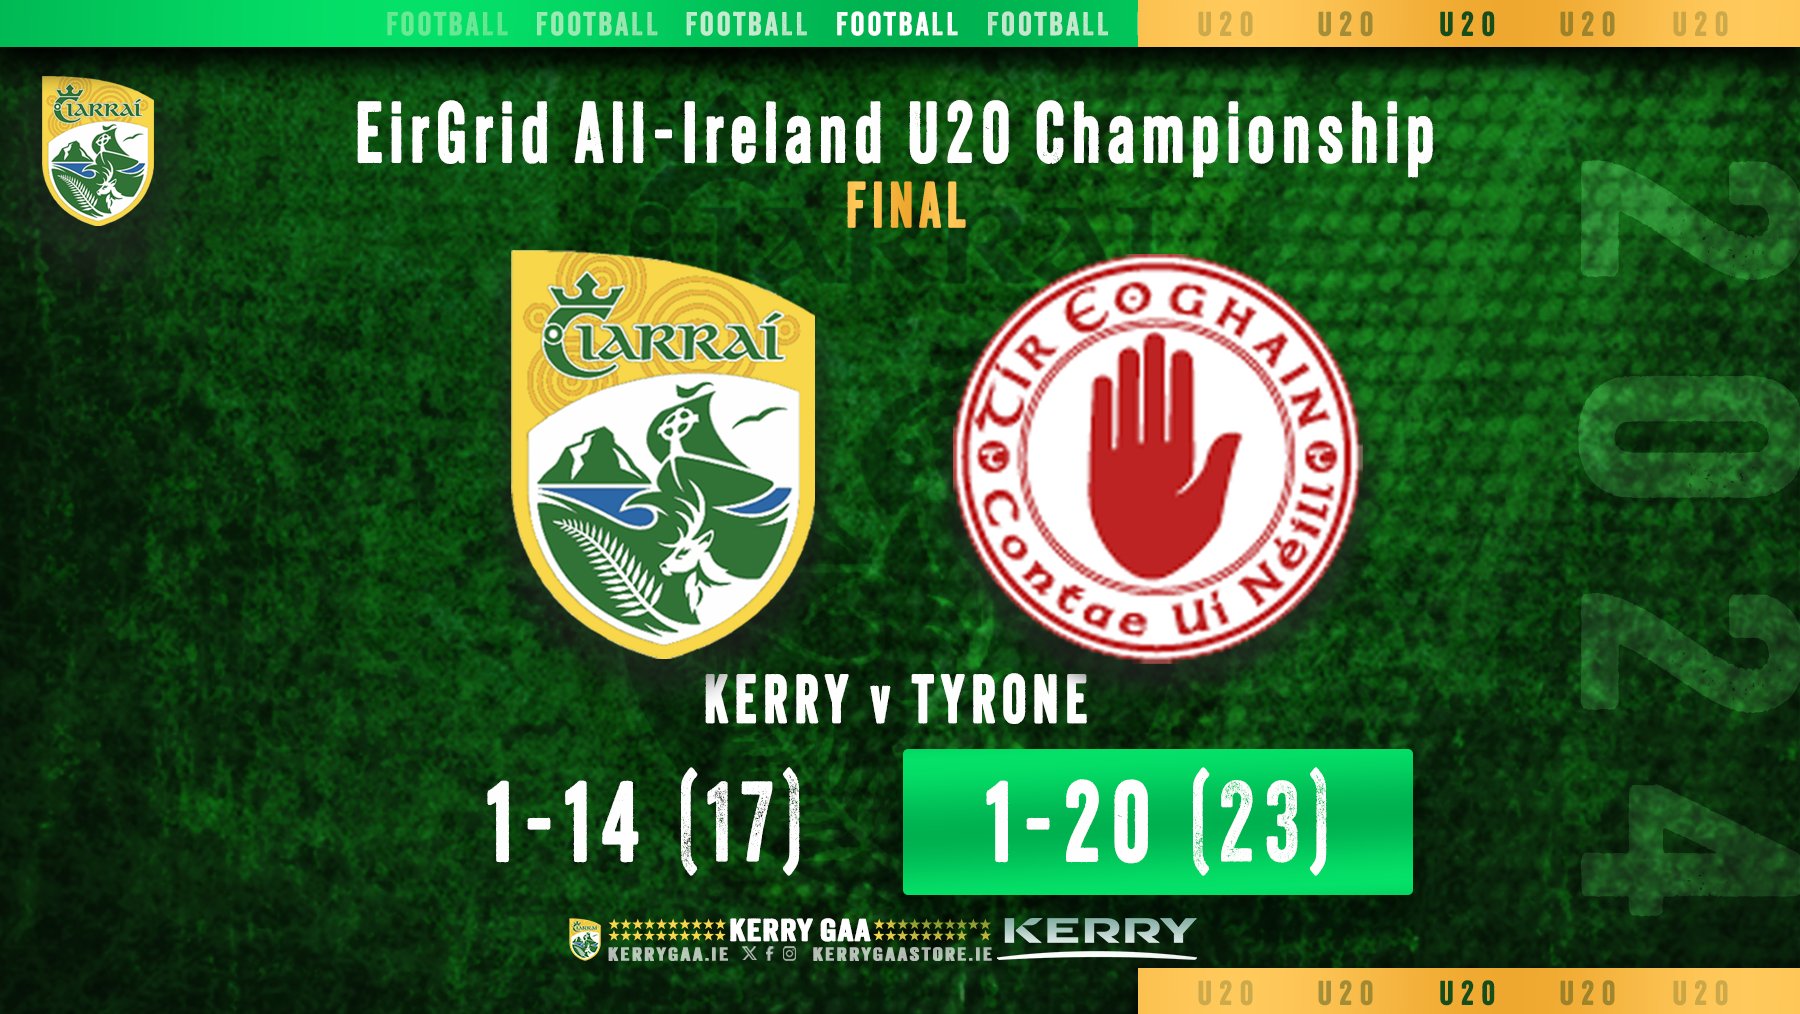 Heartbreak for Kerry in All-Ireland U20 Final